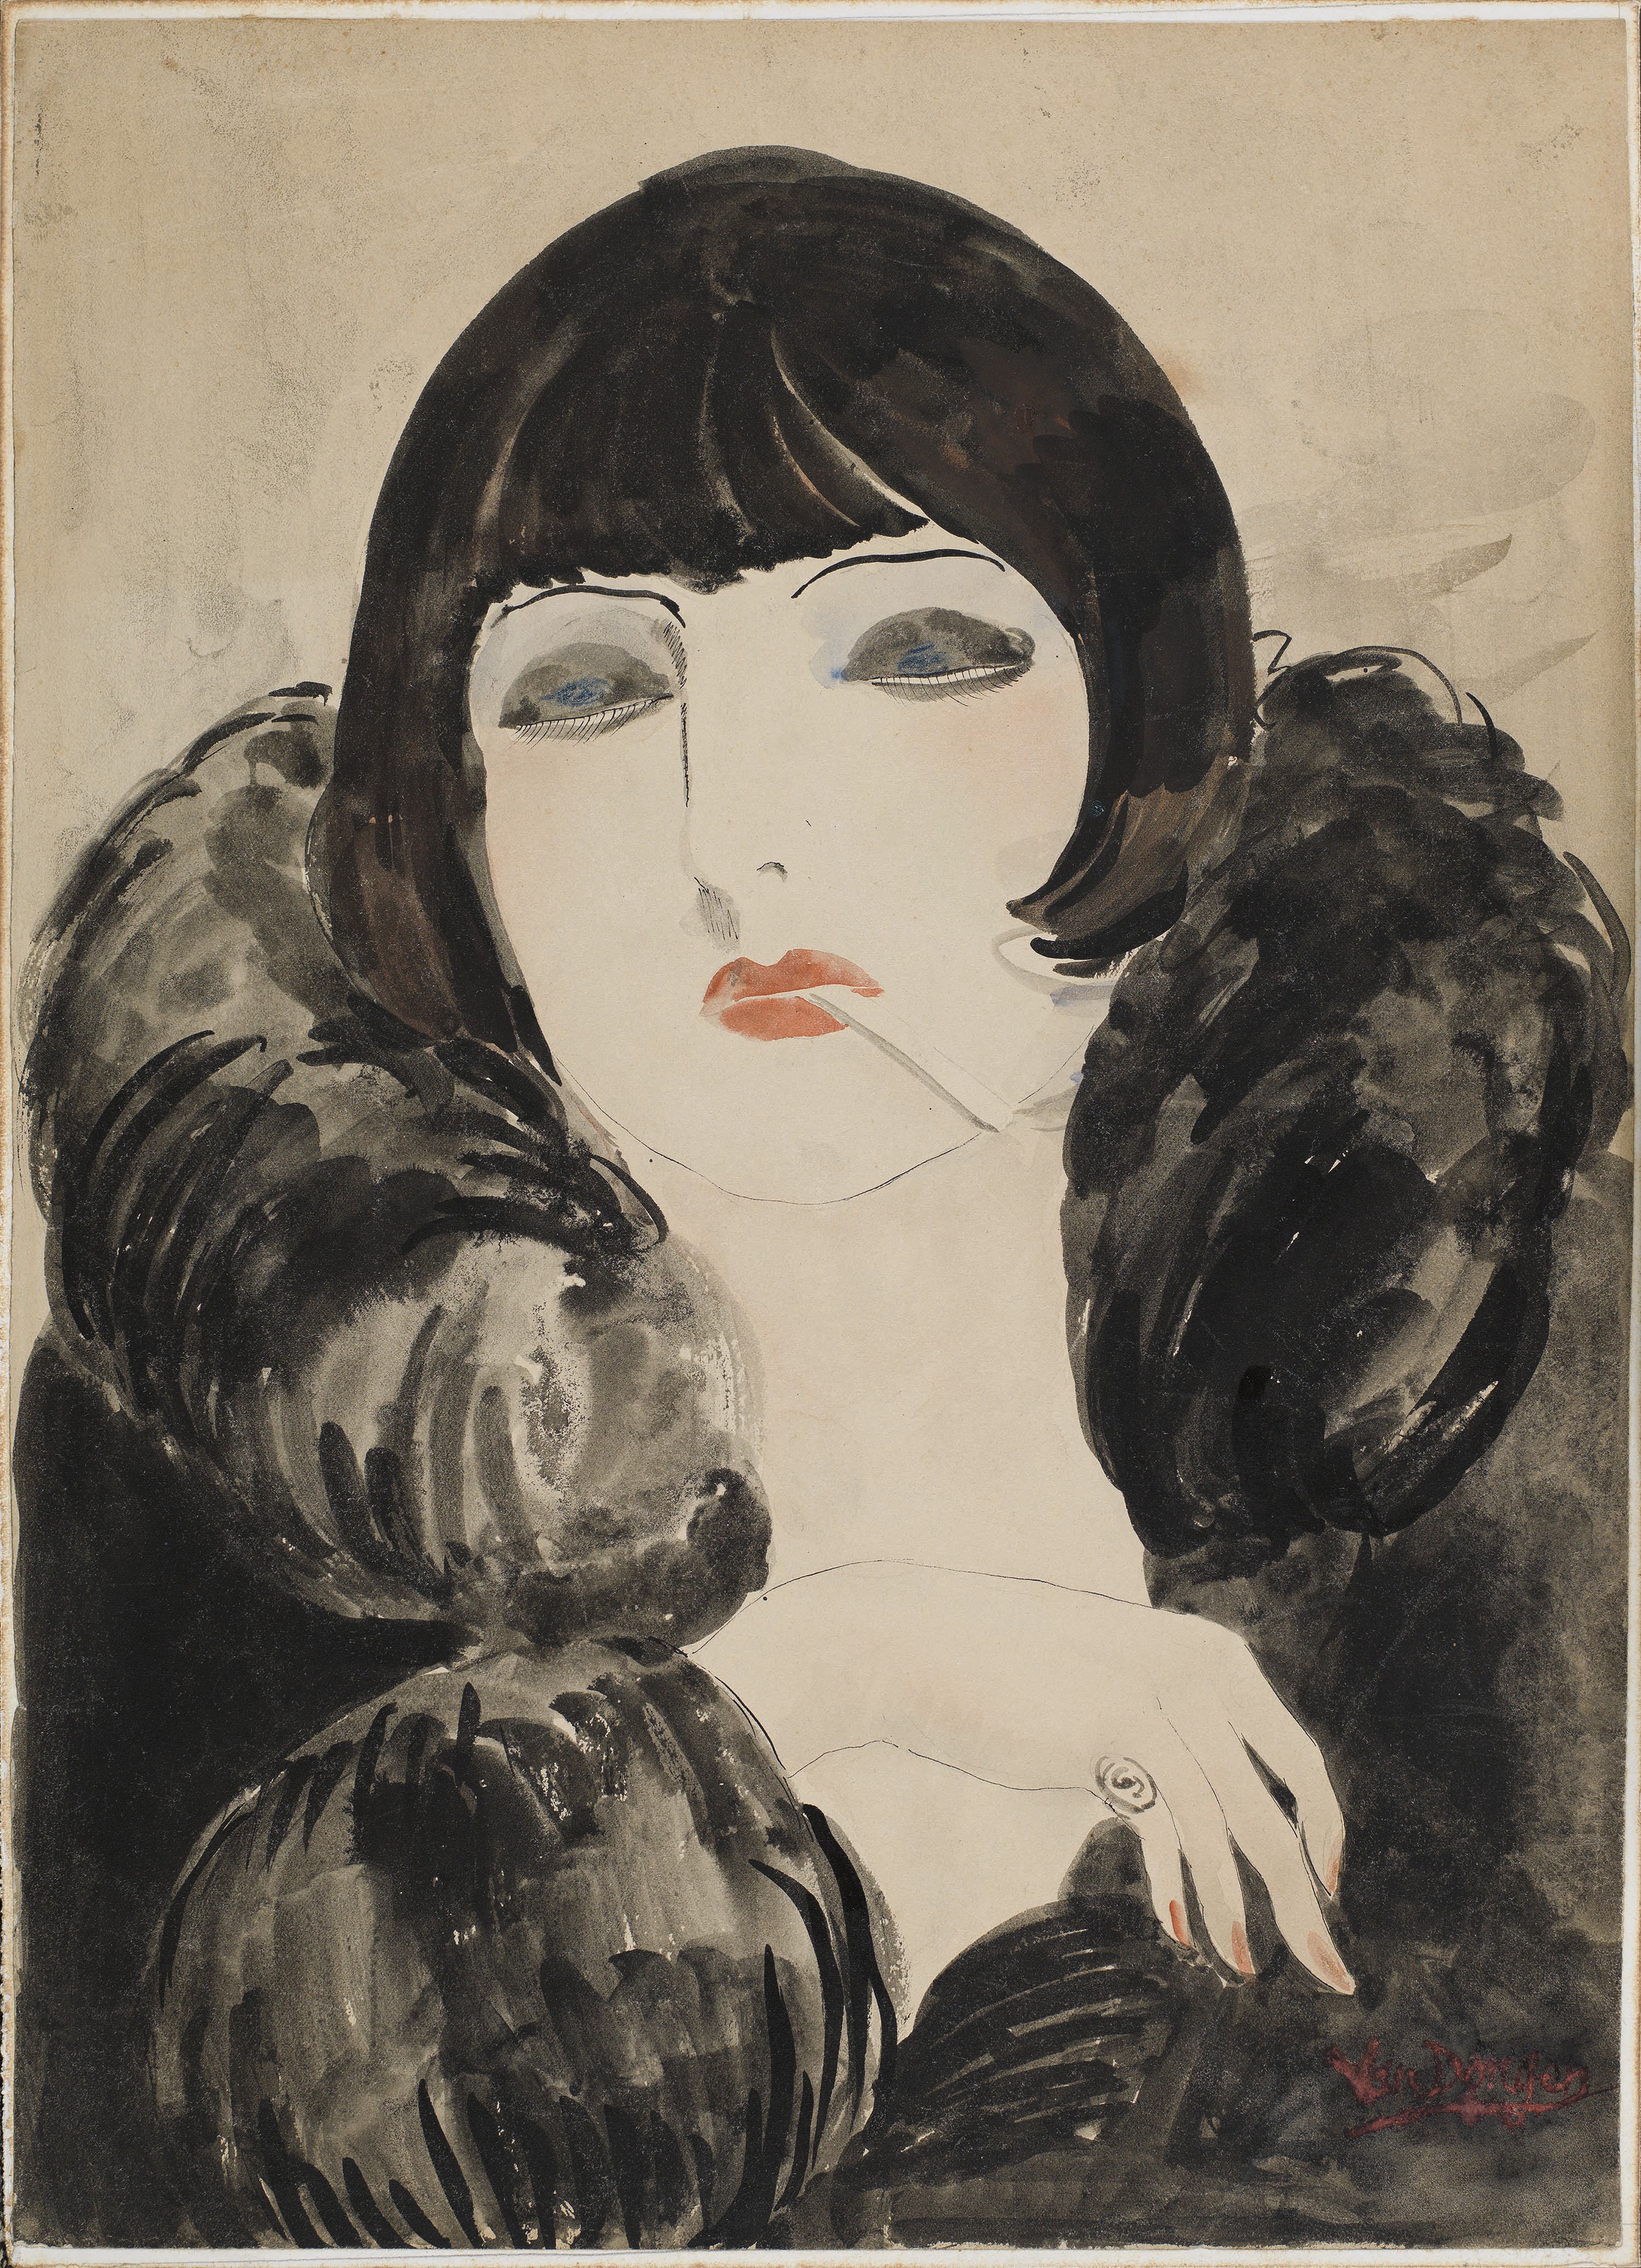 Portrait of a woman with a cigarette (Kiki de Montparnasse). Retrato de una mujer con un cigarrillo (Kiki de Montparnasse), c. 1922-1924